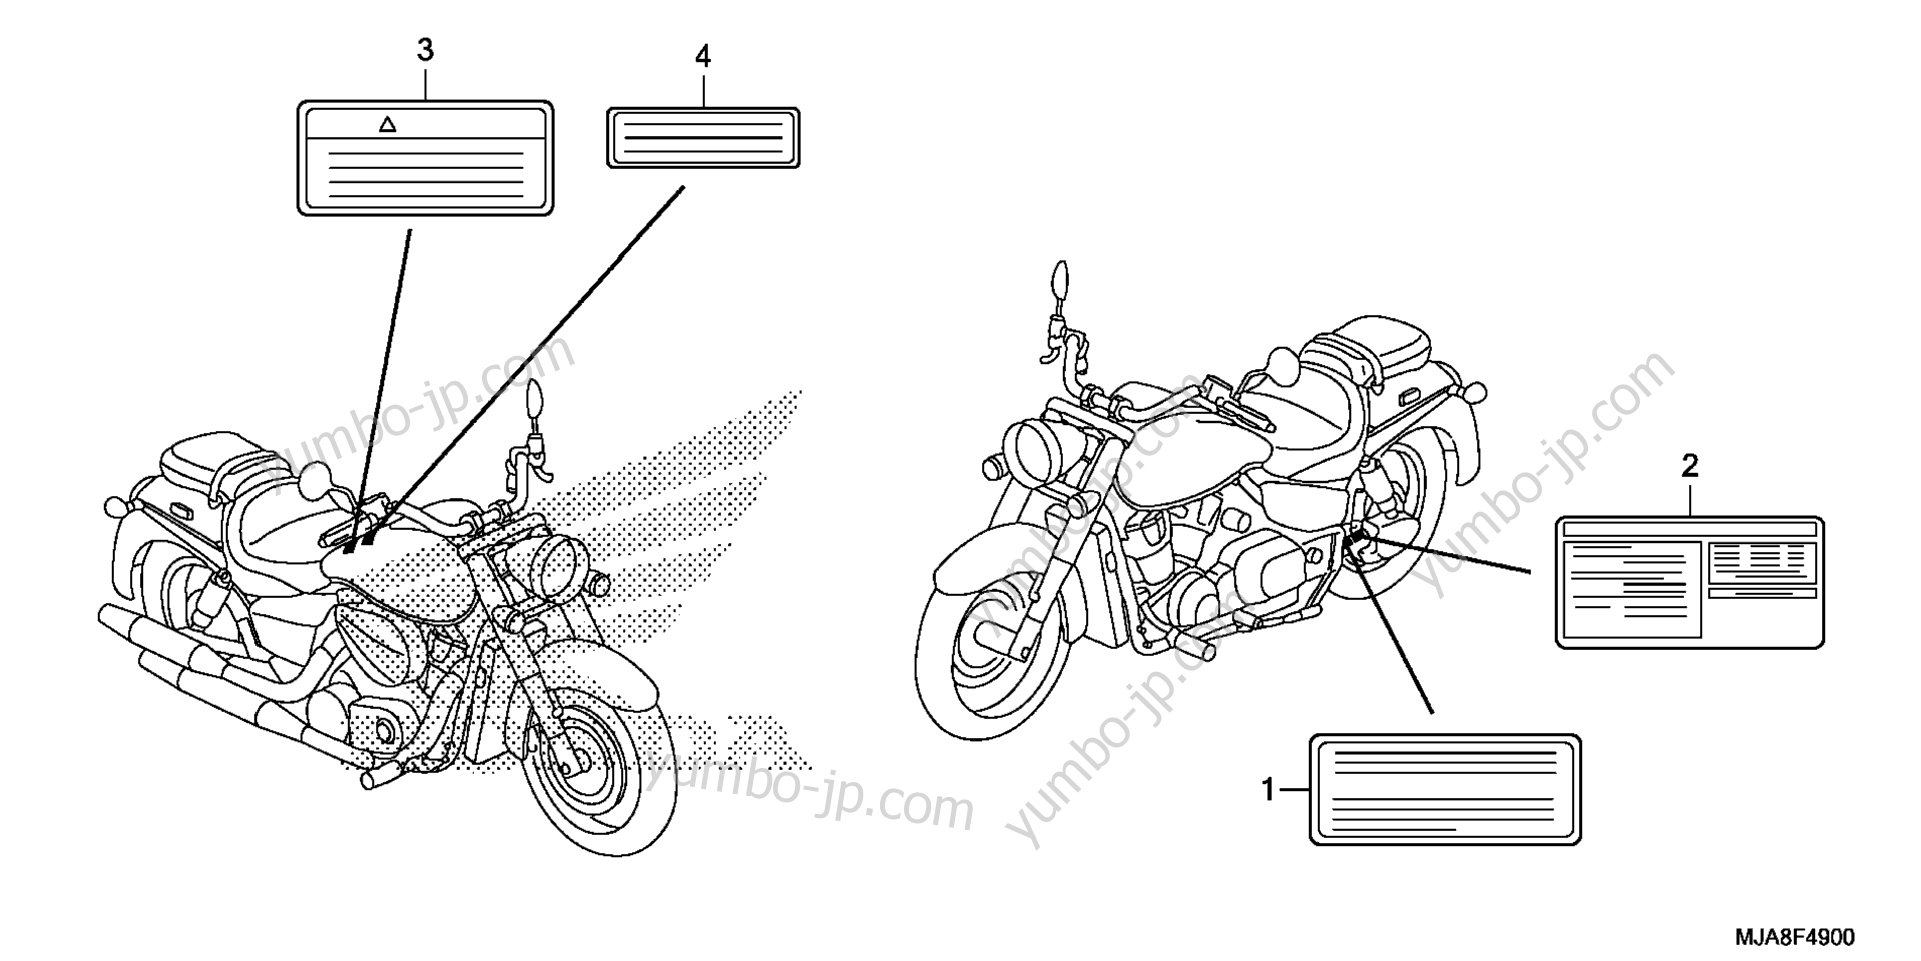 CAUTION LABEL для мотоциклов HONDA VT750C2 AC 2014 г.